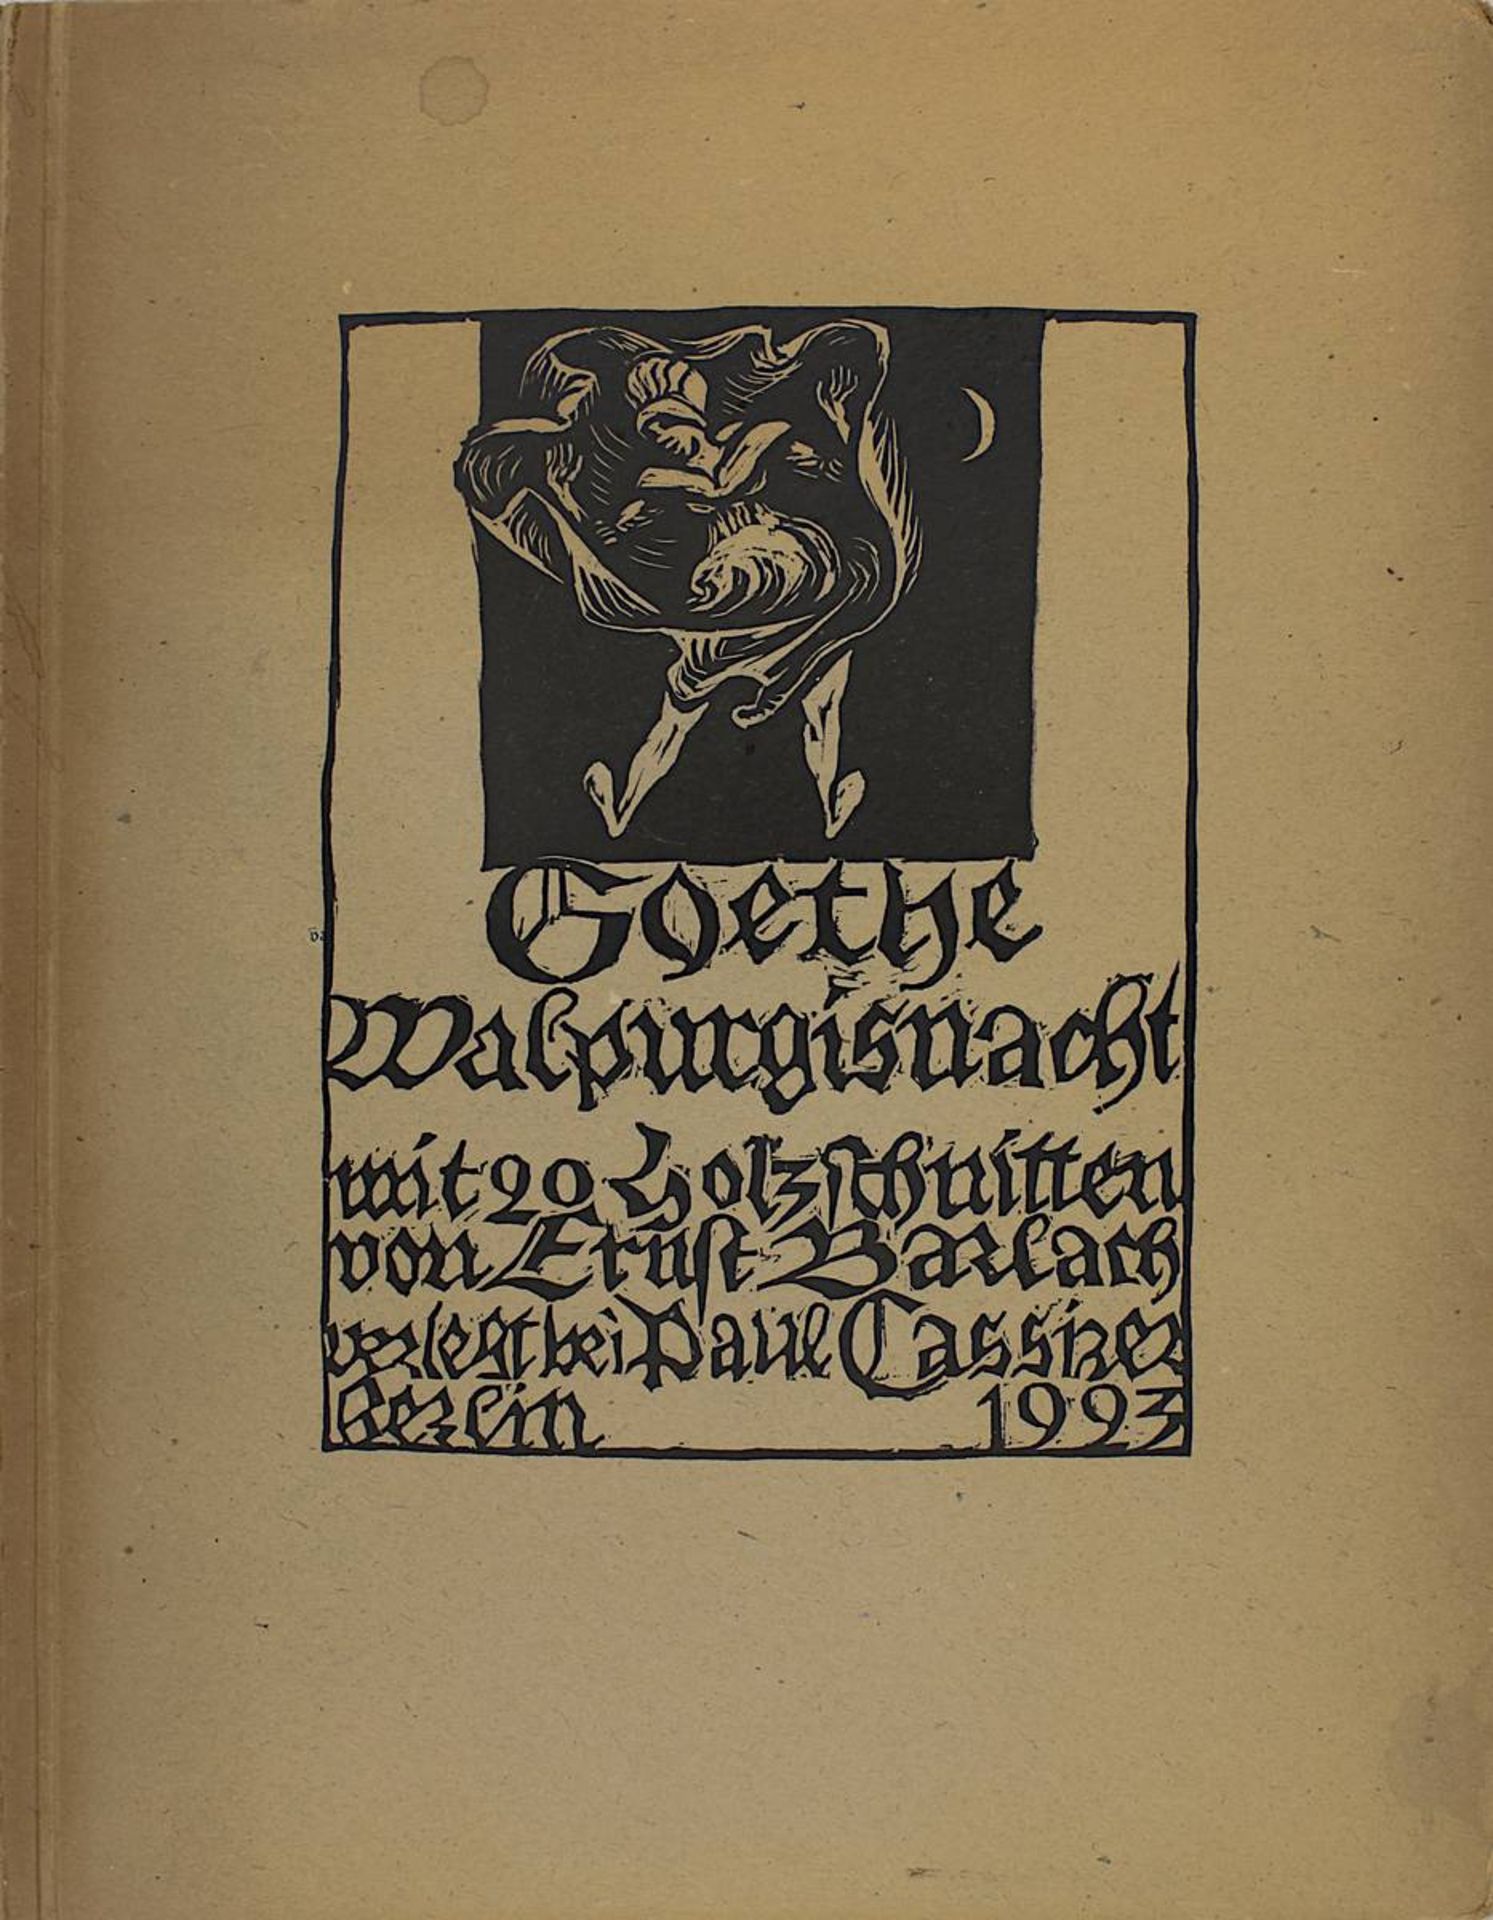 Goethe, Johann Wolfgang von "Walpurgisnacht", illustriert mit 20 Holzschnitten von Ernst Barlach,